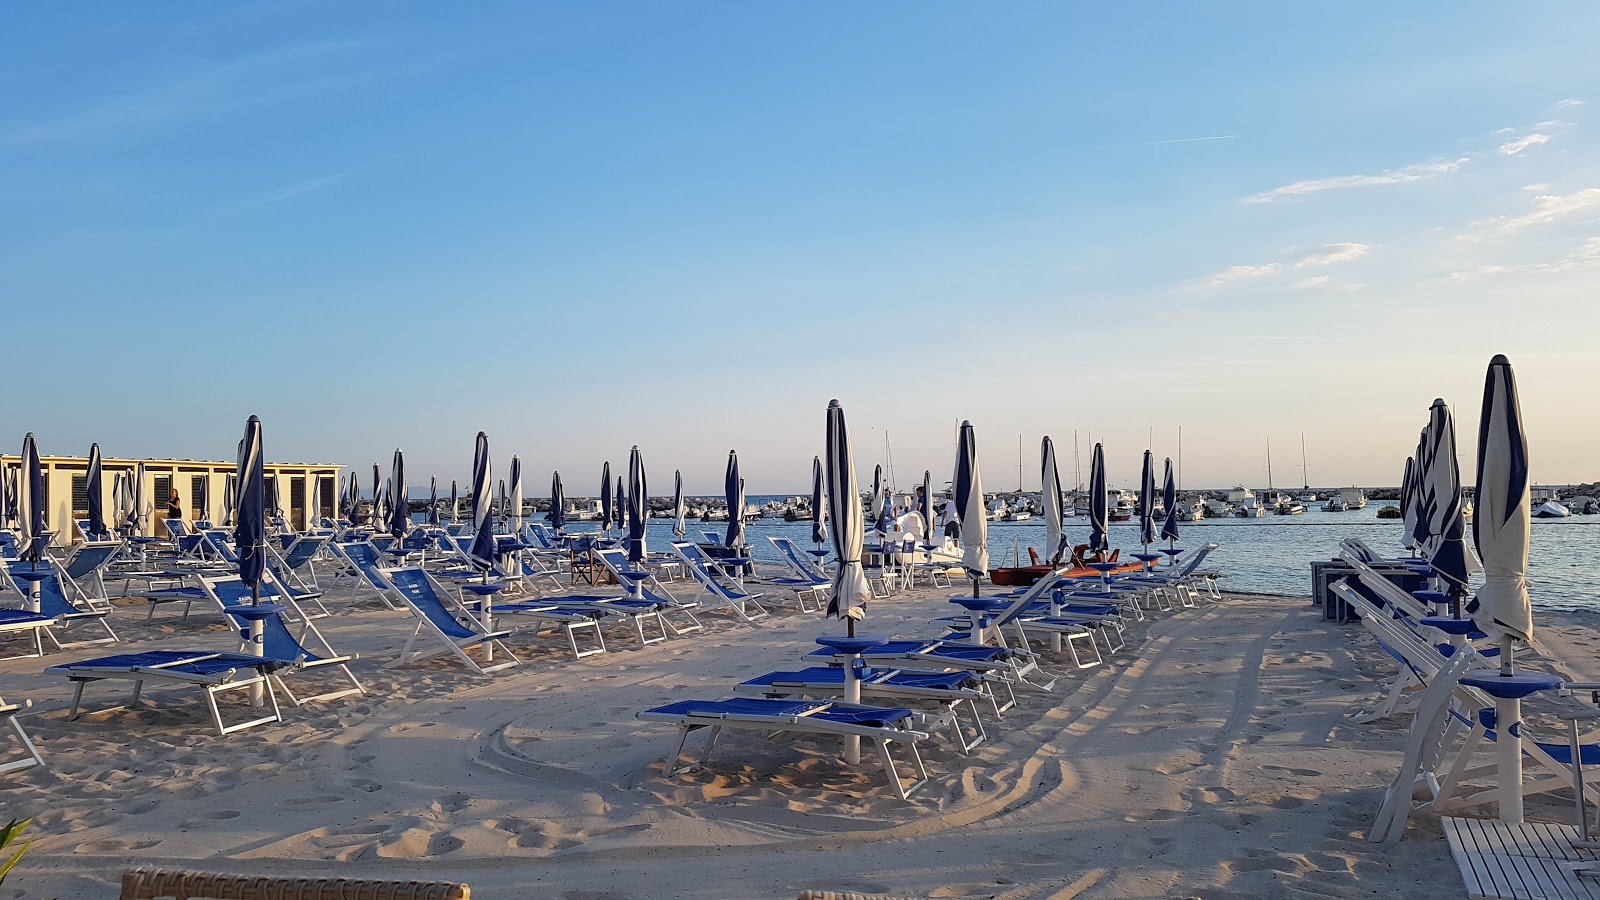 Spiaggia Di Domani'in fotoğrafı plaj tatil beldesi alanı